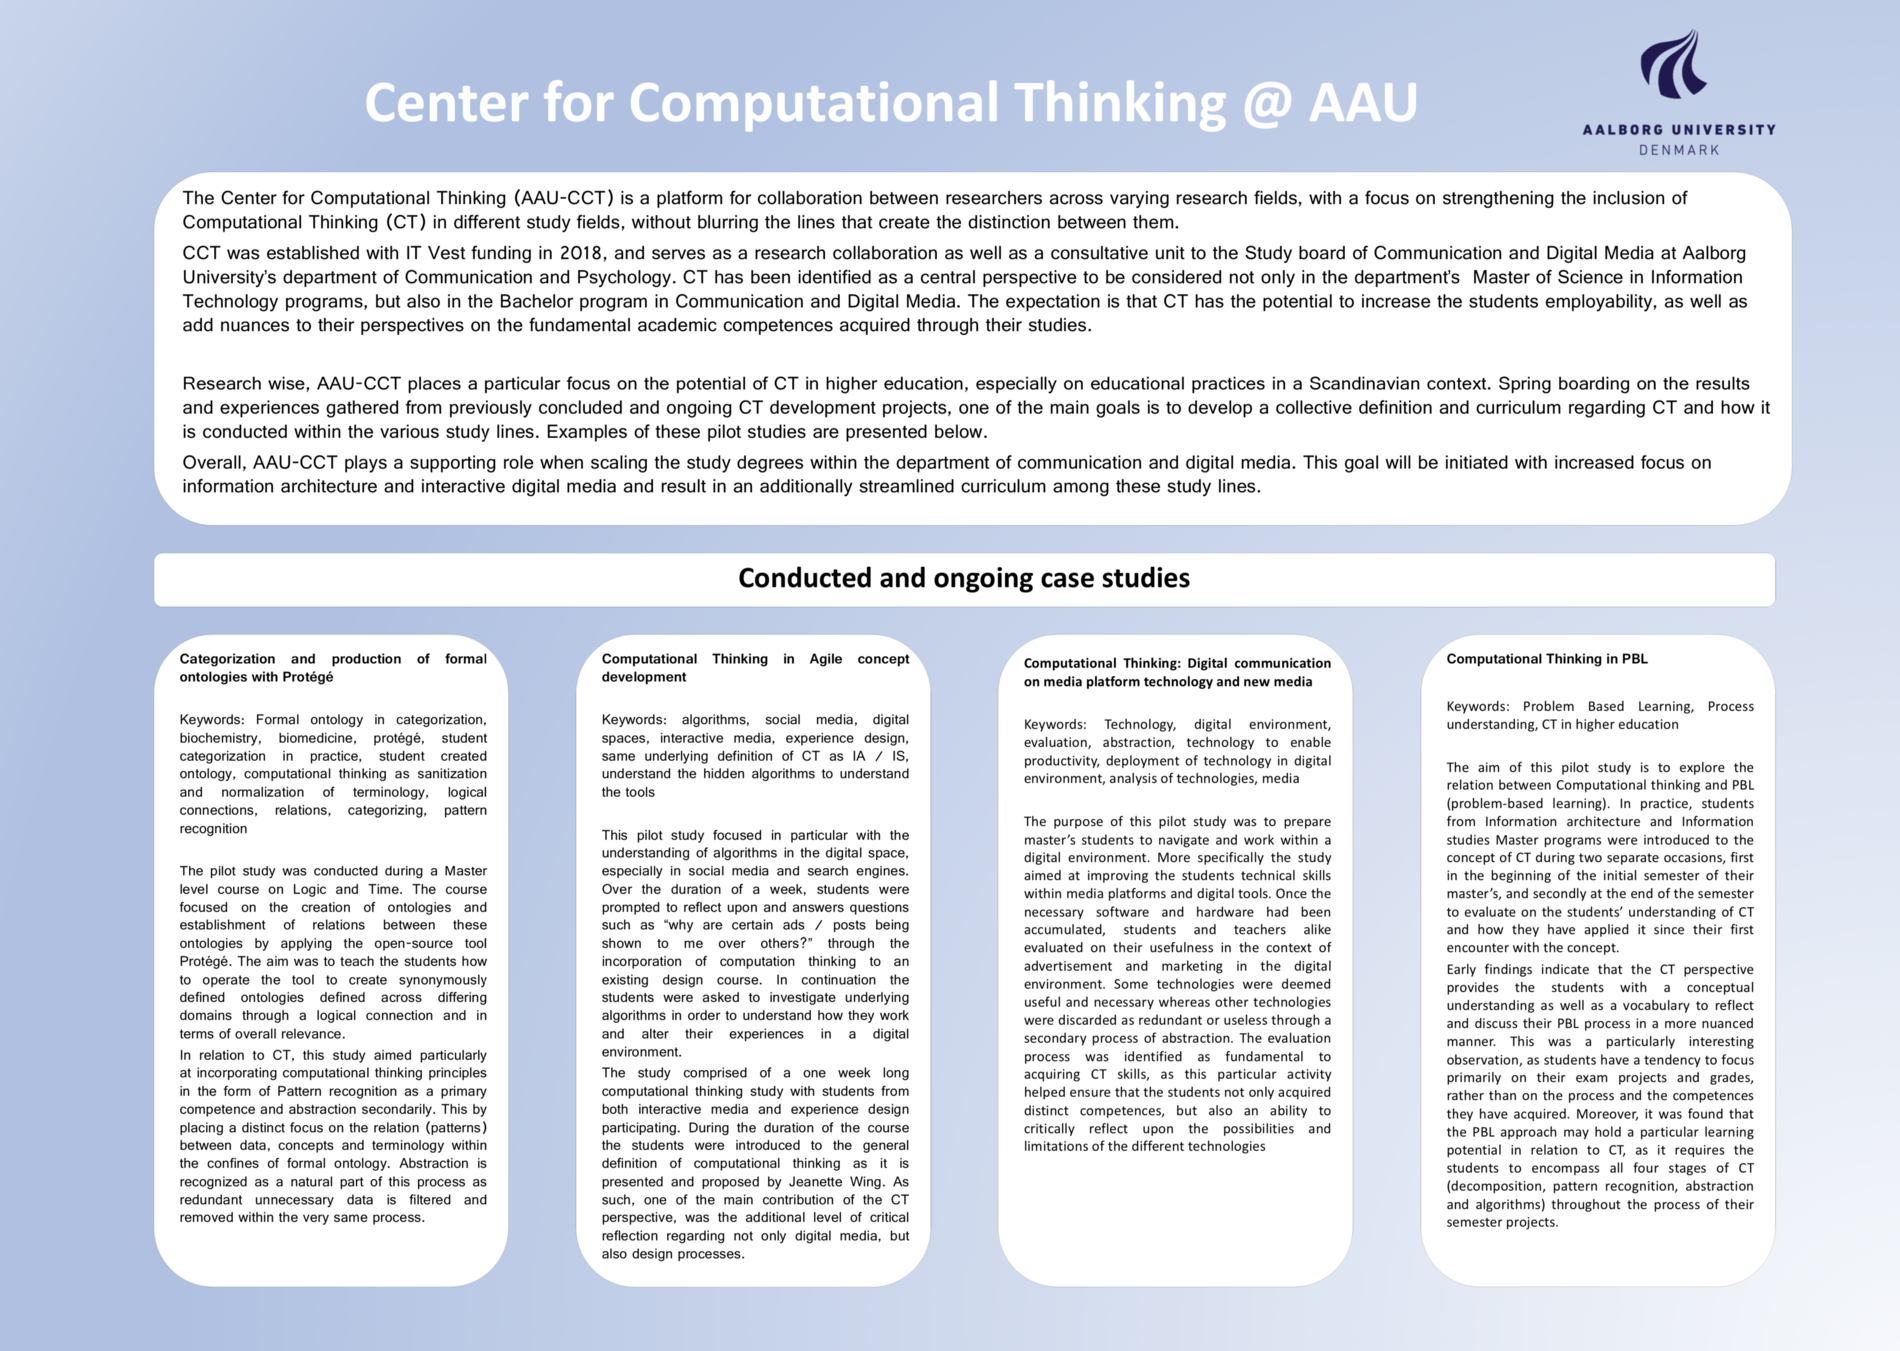 Link til pdf med poster for Center for Computational Thinking @AAU